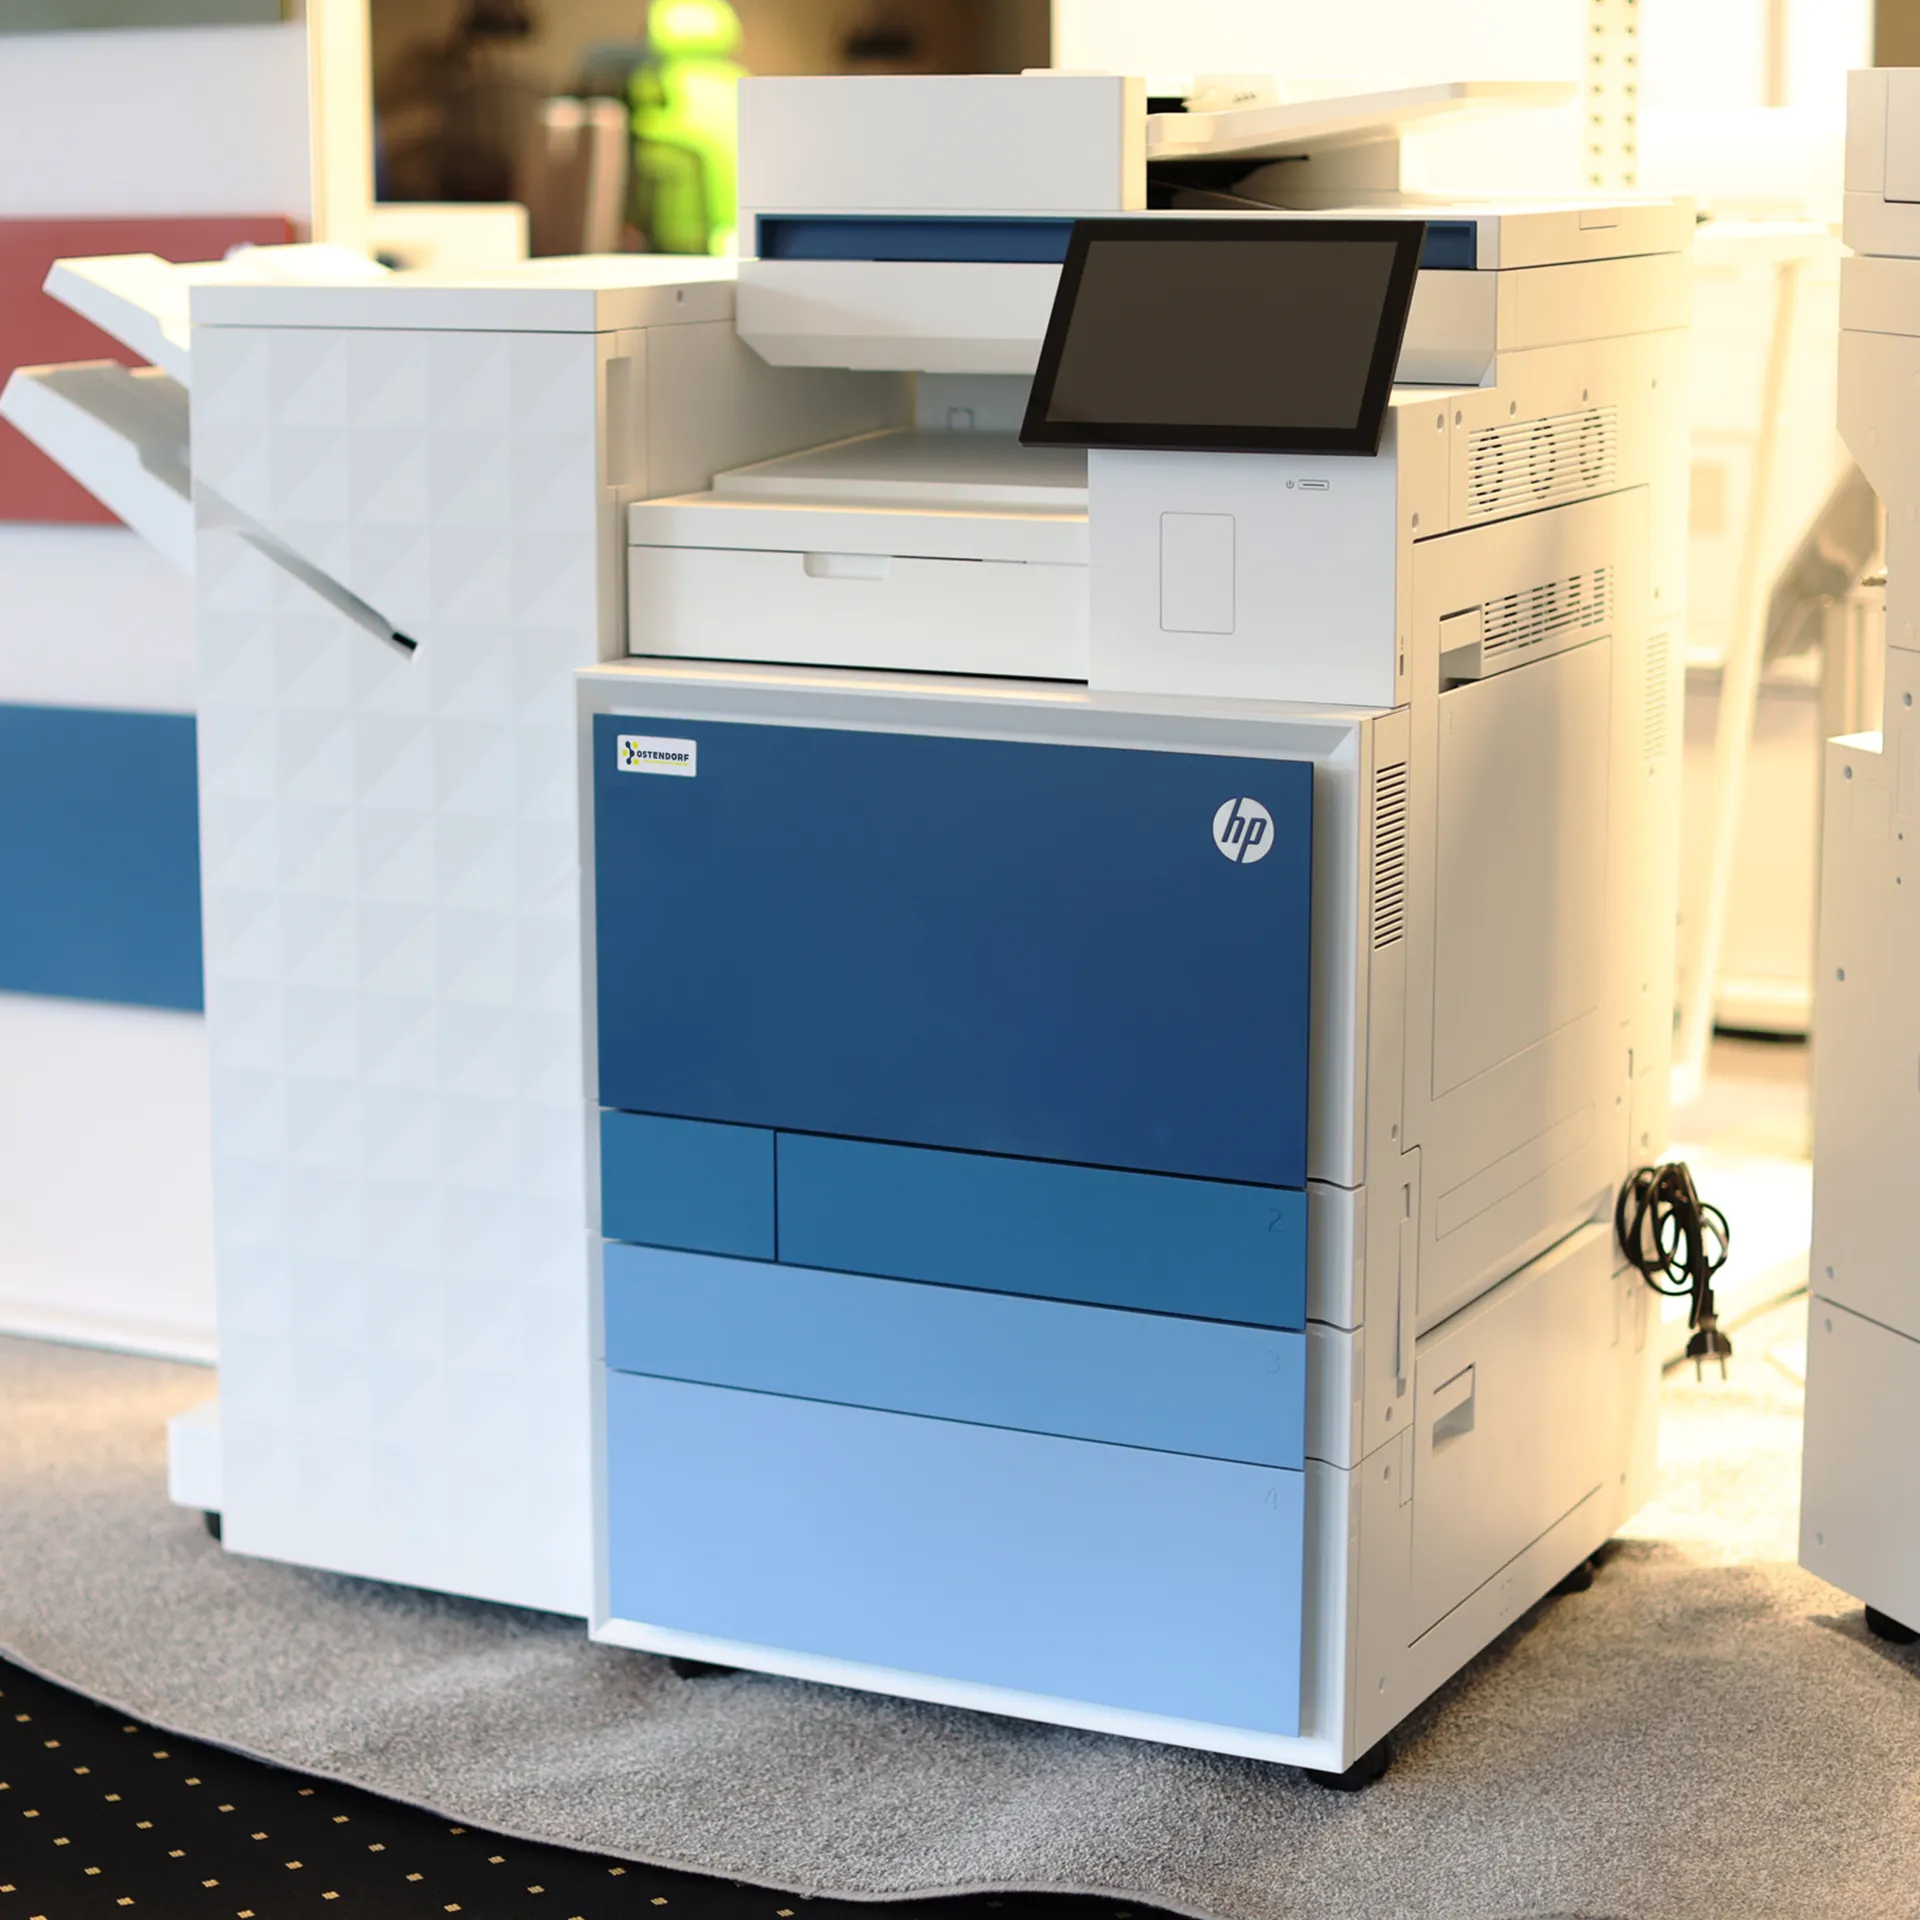 Ein modernes Druck- und Kopiersystem der Marke HP